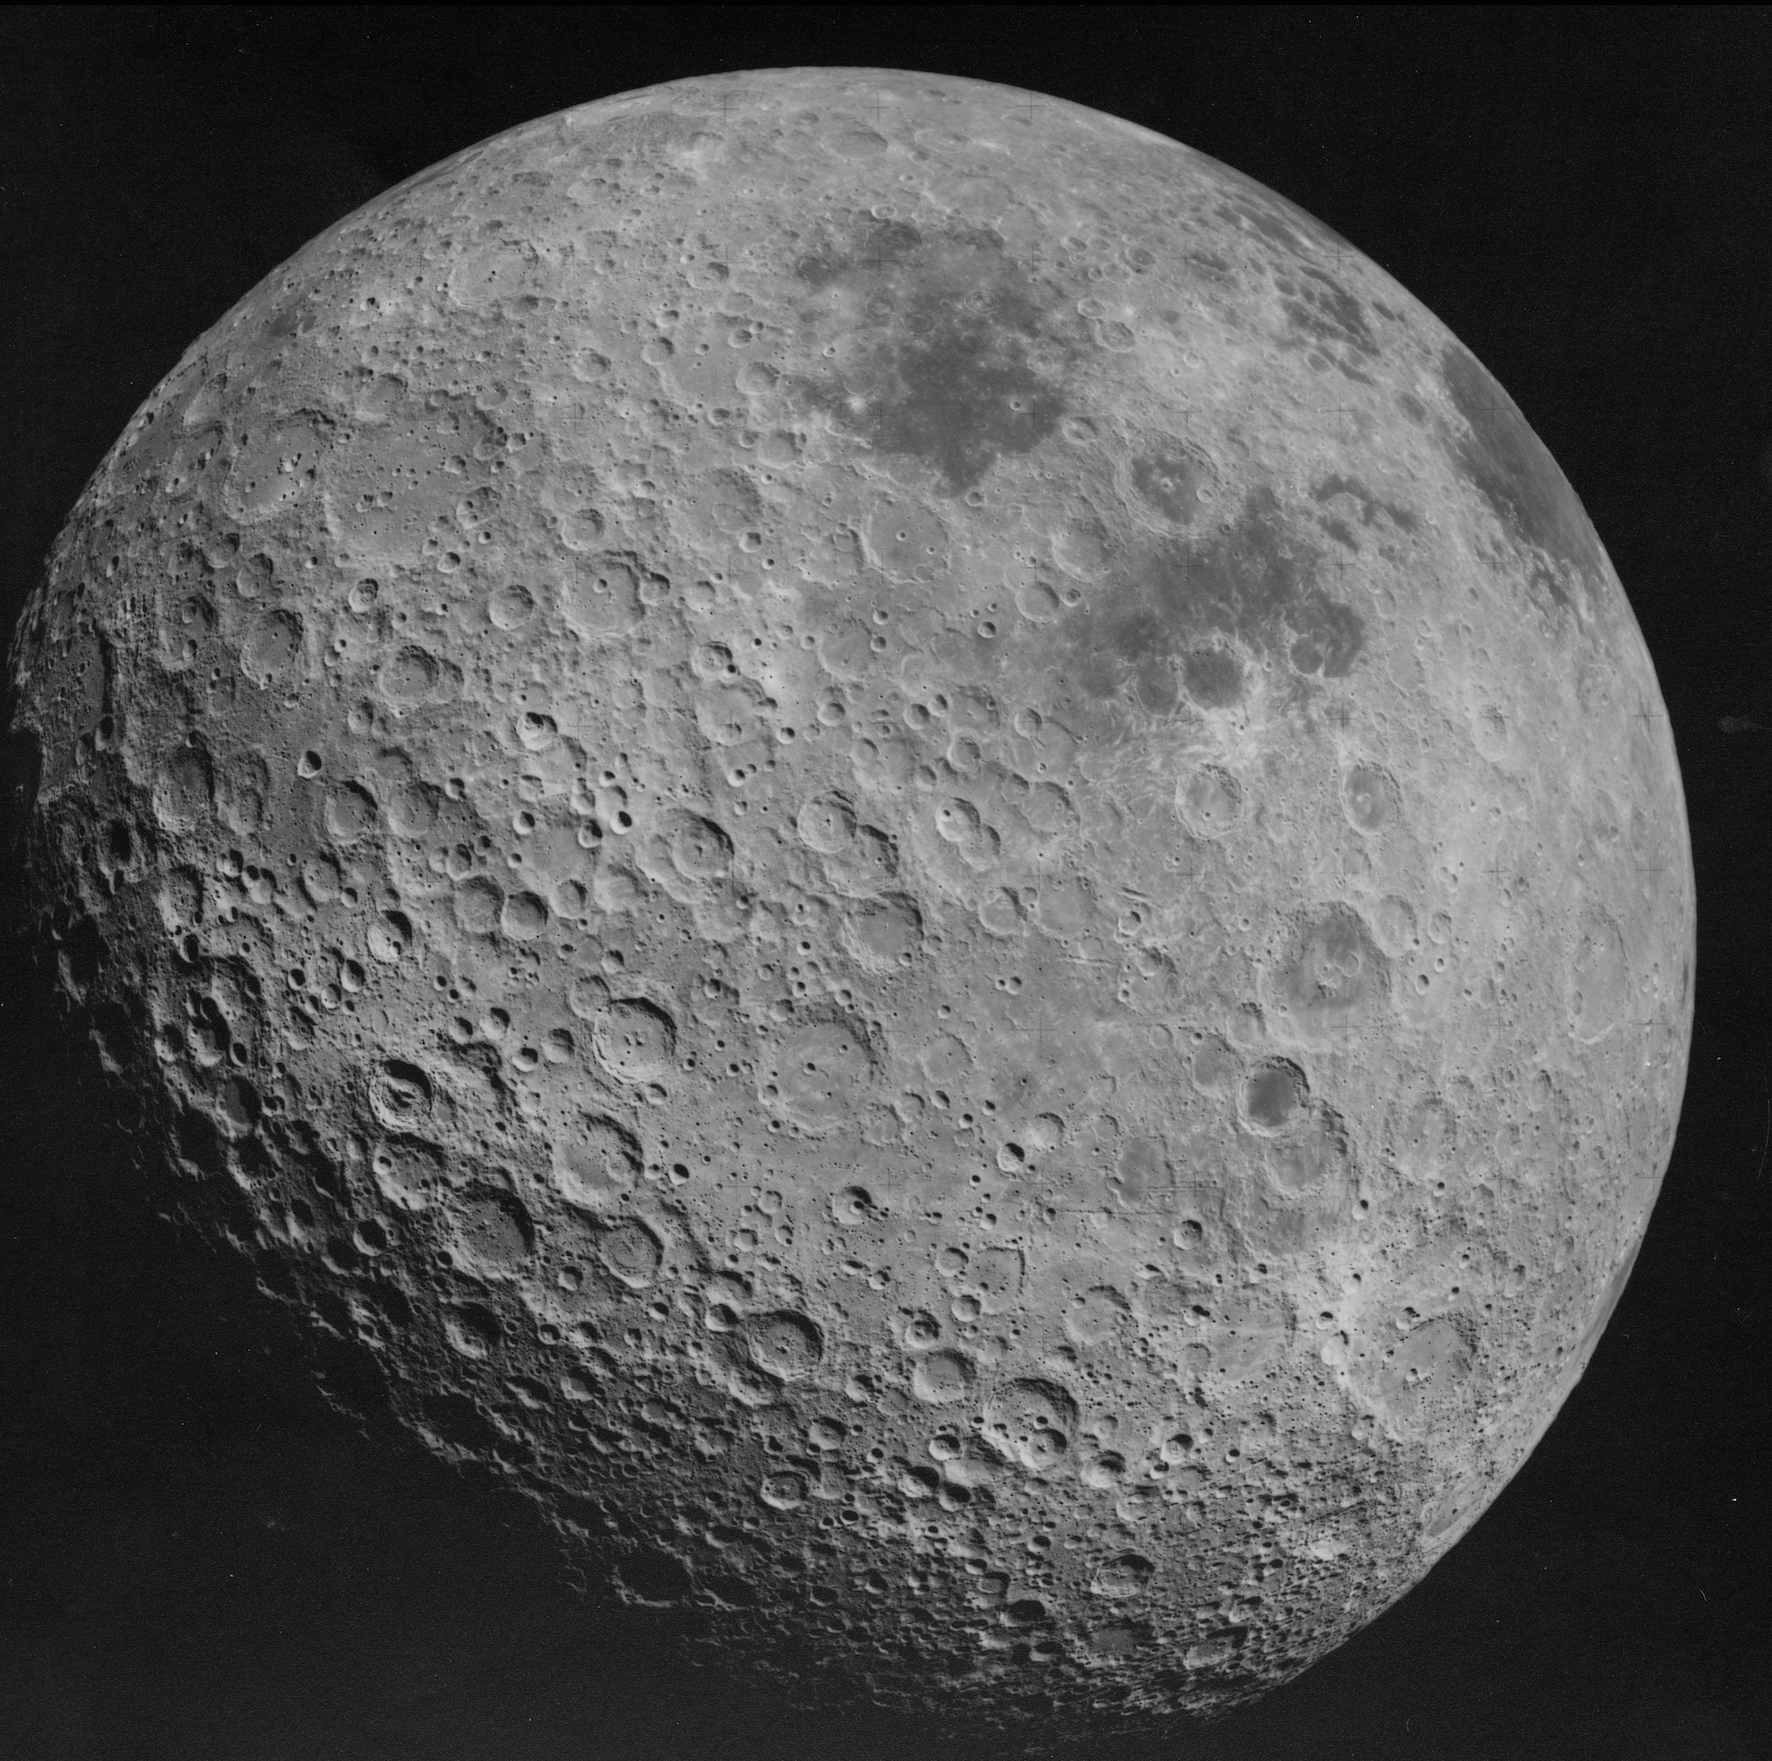 Ciemna strona Księżyca. Źródło: Wikicommons